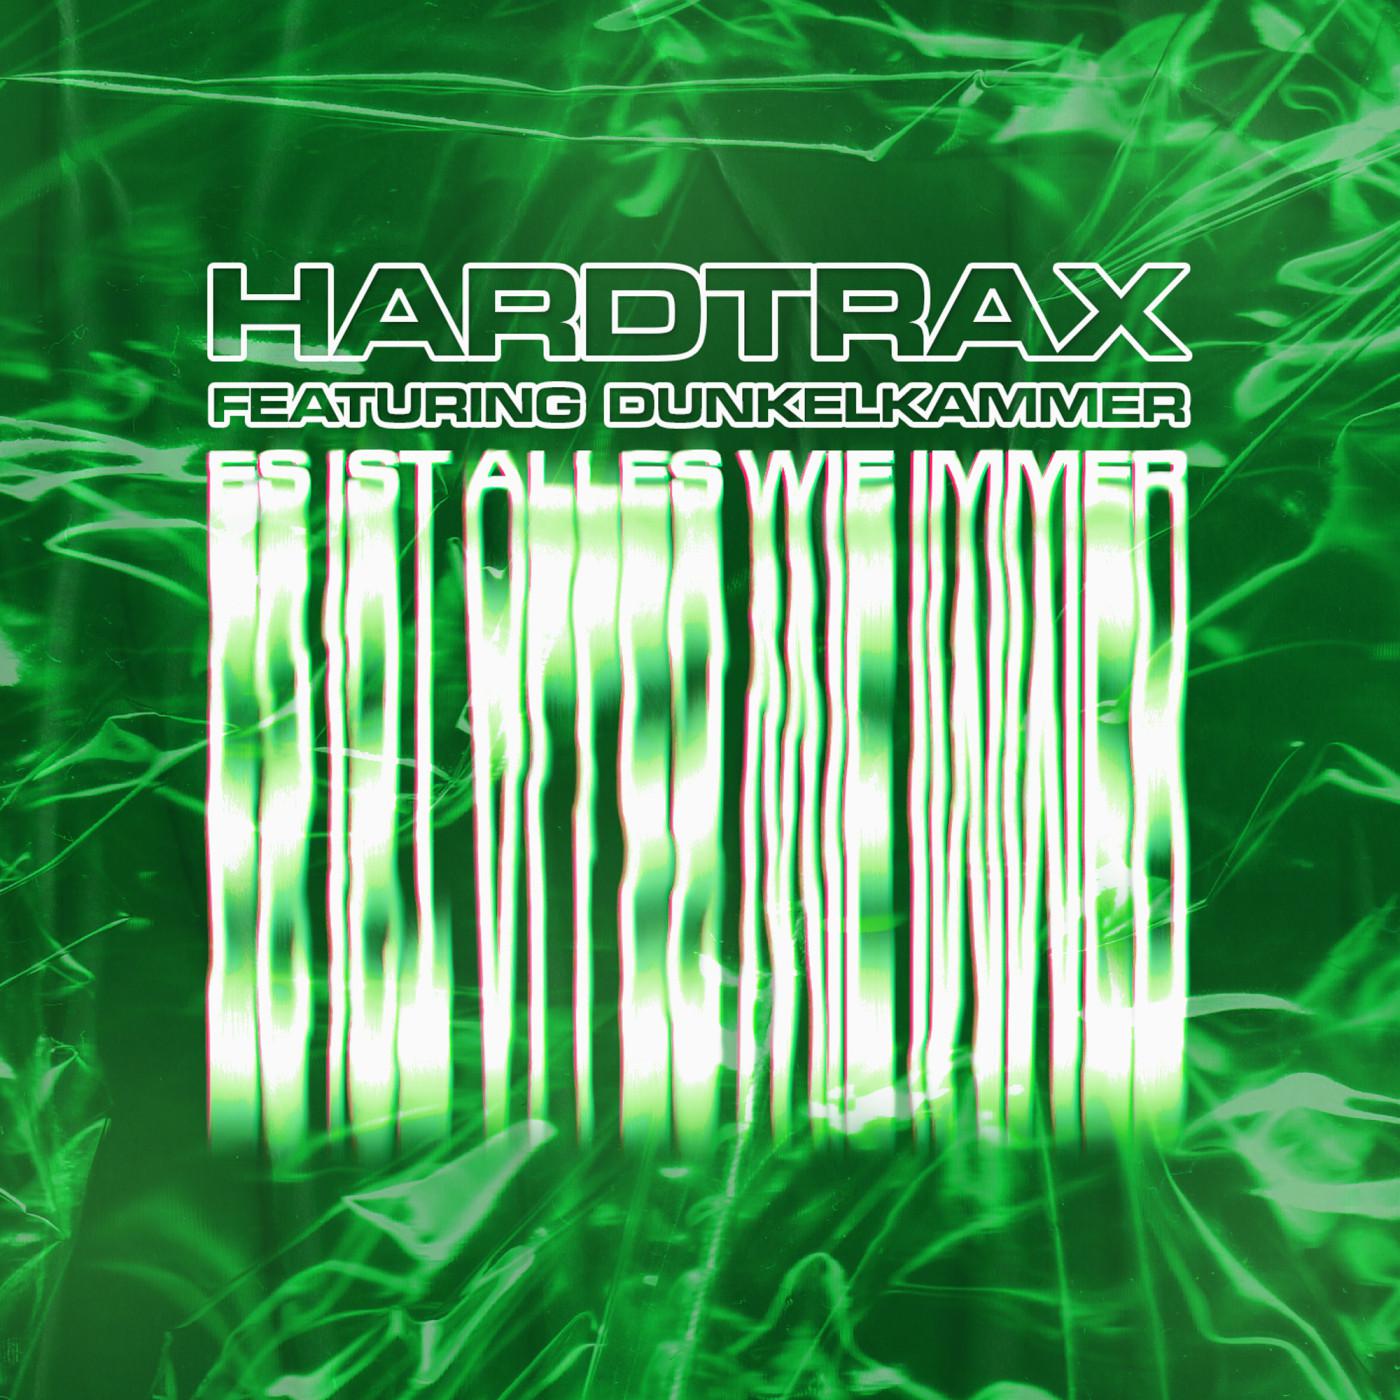 hardtrax - Die Division (feat. Dunkelkammer) (Original Mix)